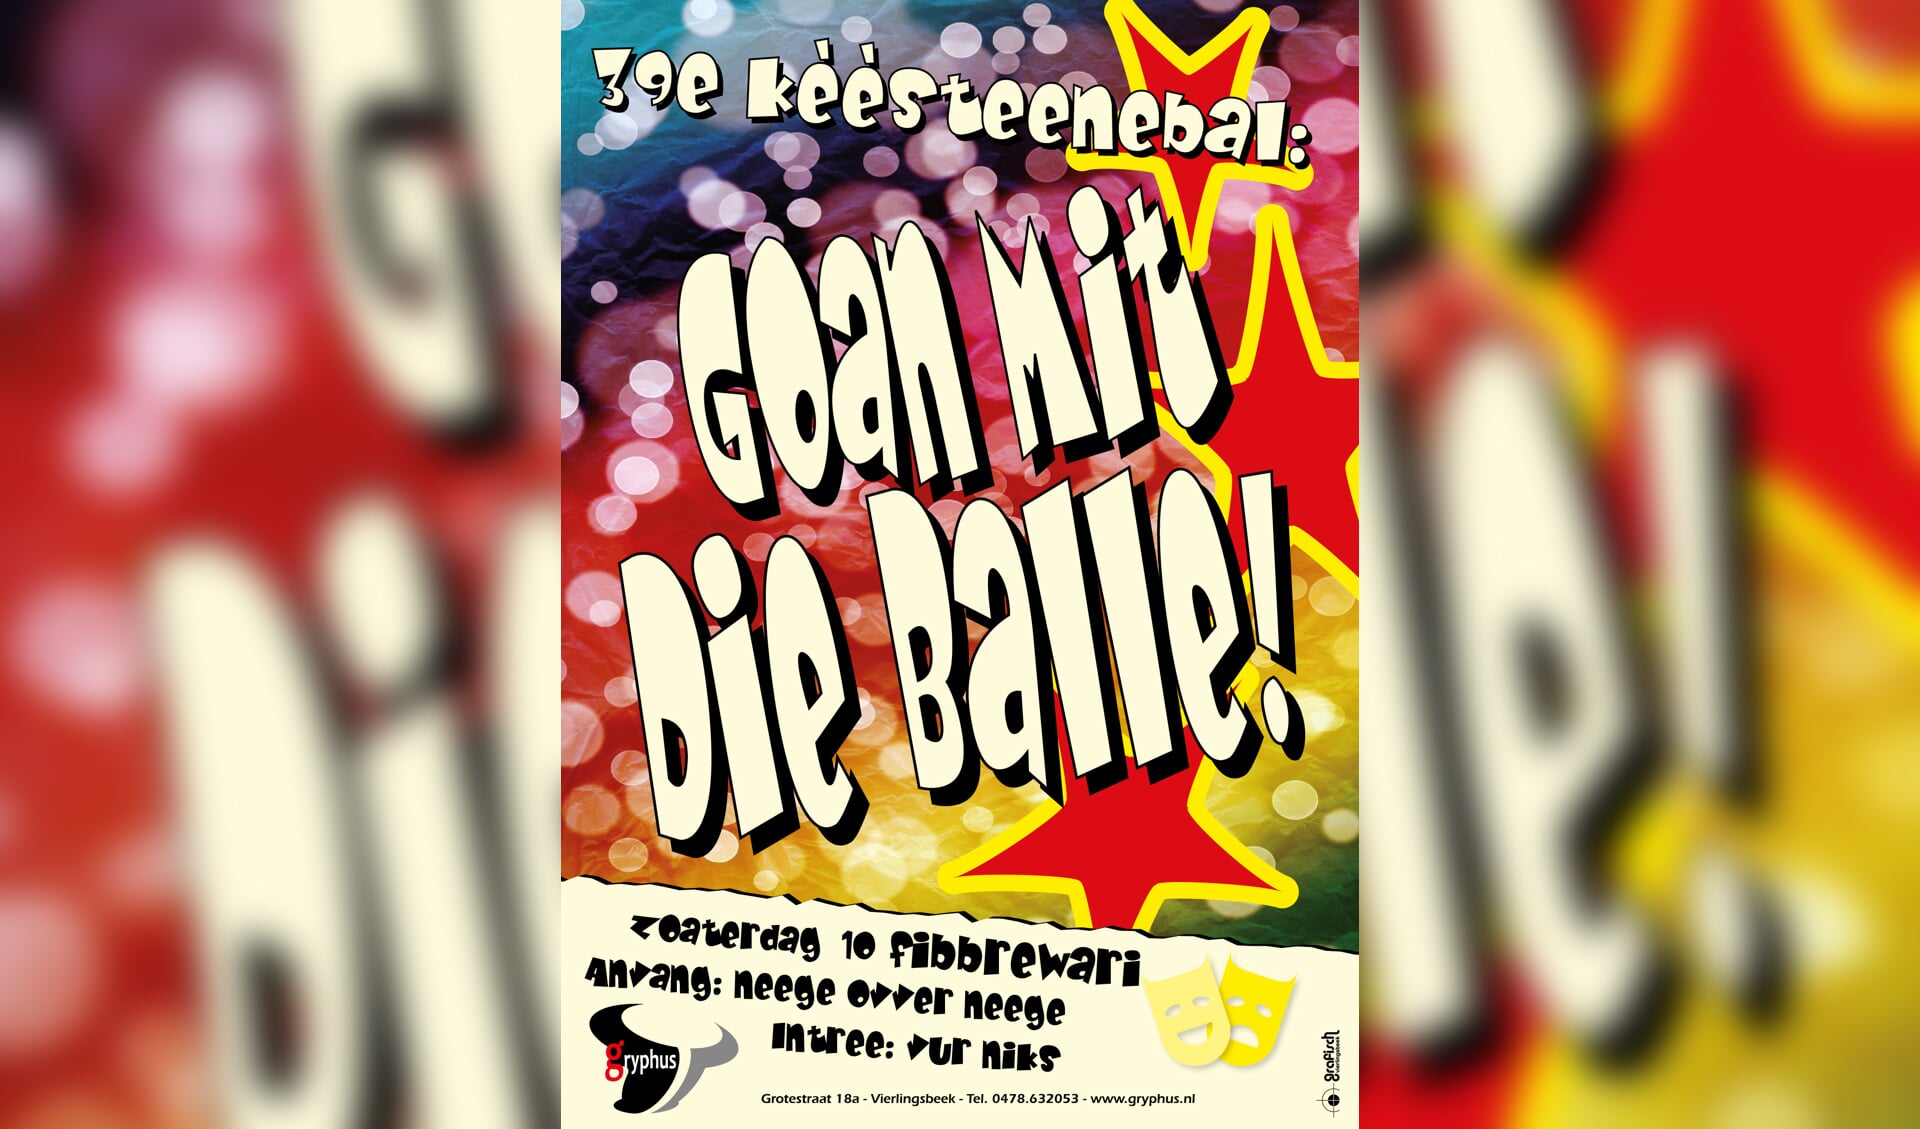  Goan Mit Die Balle! is het thema van het Kèèsteenebal.  